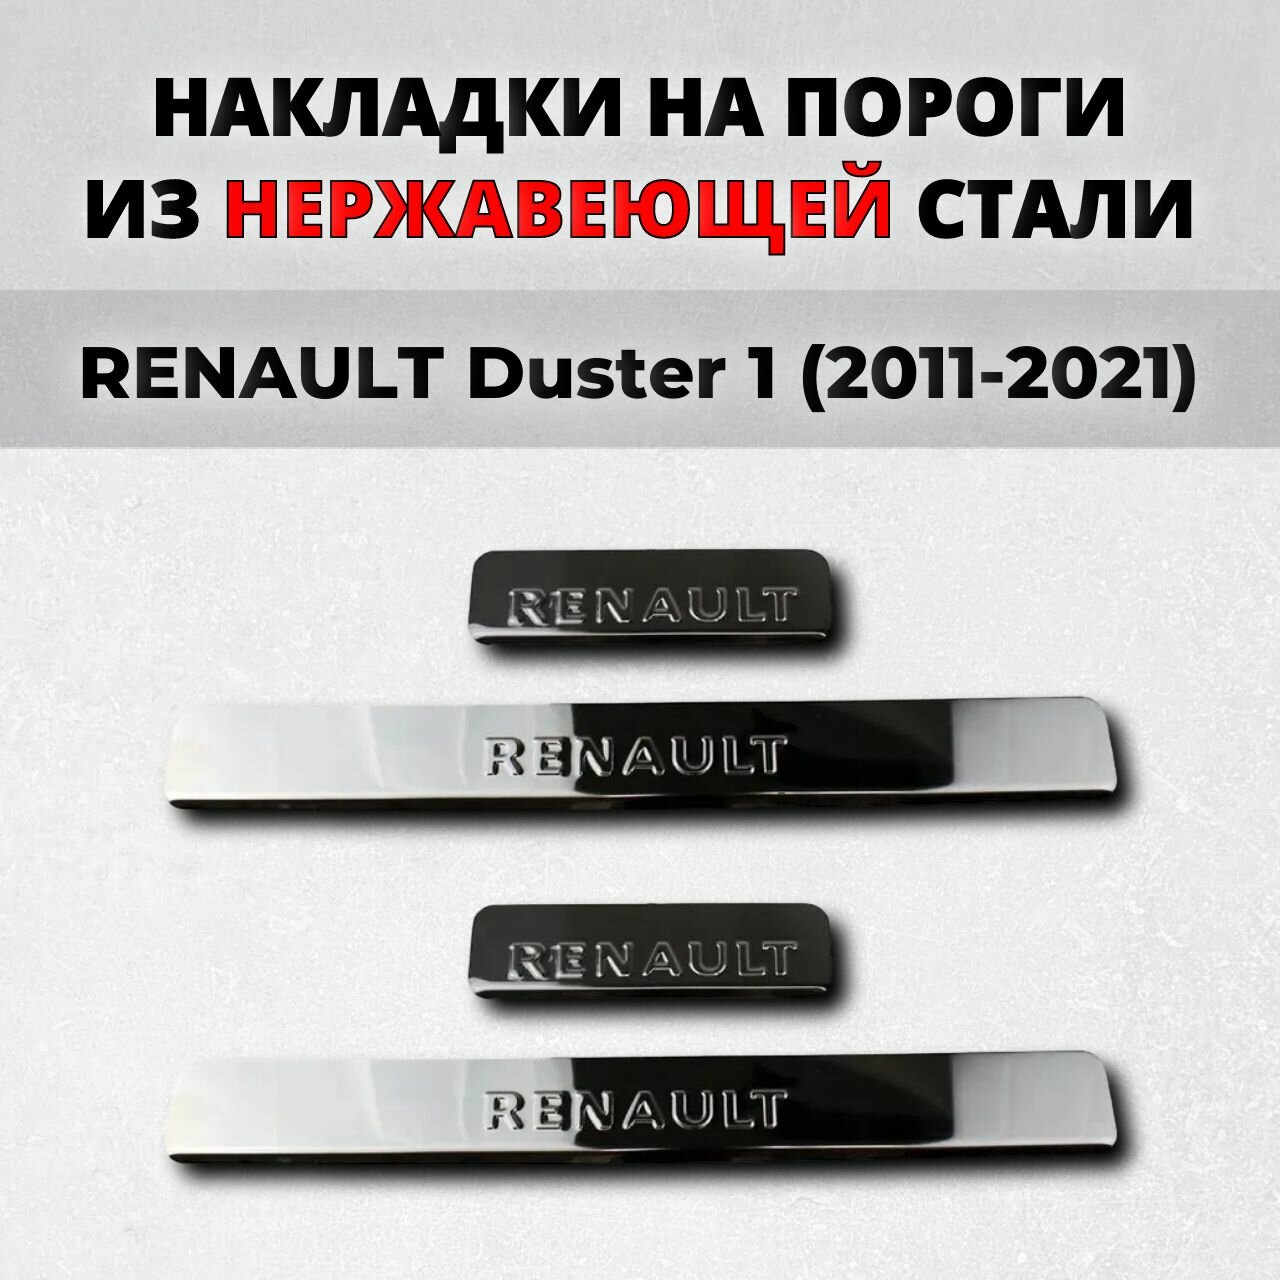 Накладки на пороги Рено Дастер 1 поколение 2011-2021 из нержавеющей стали RENAULT Duster